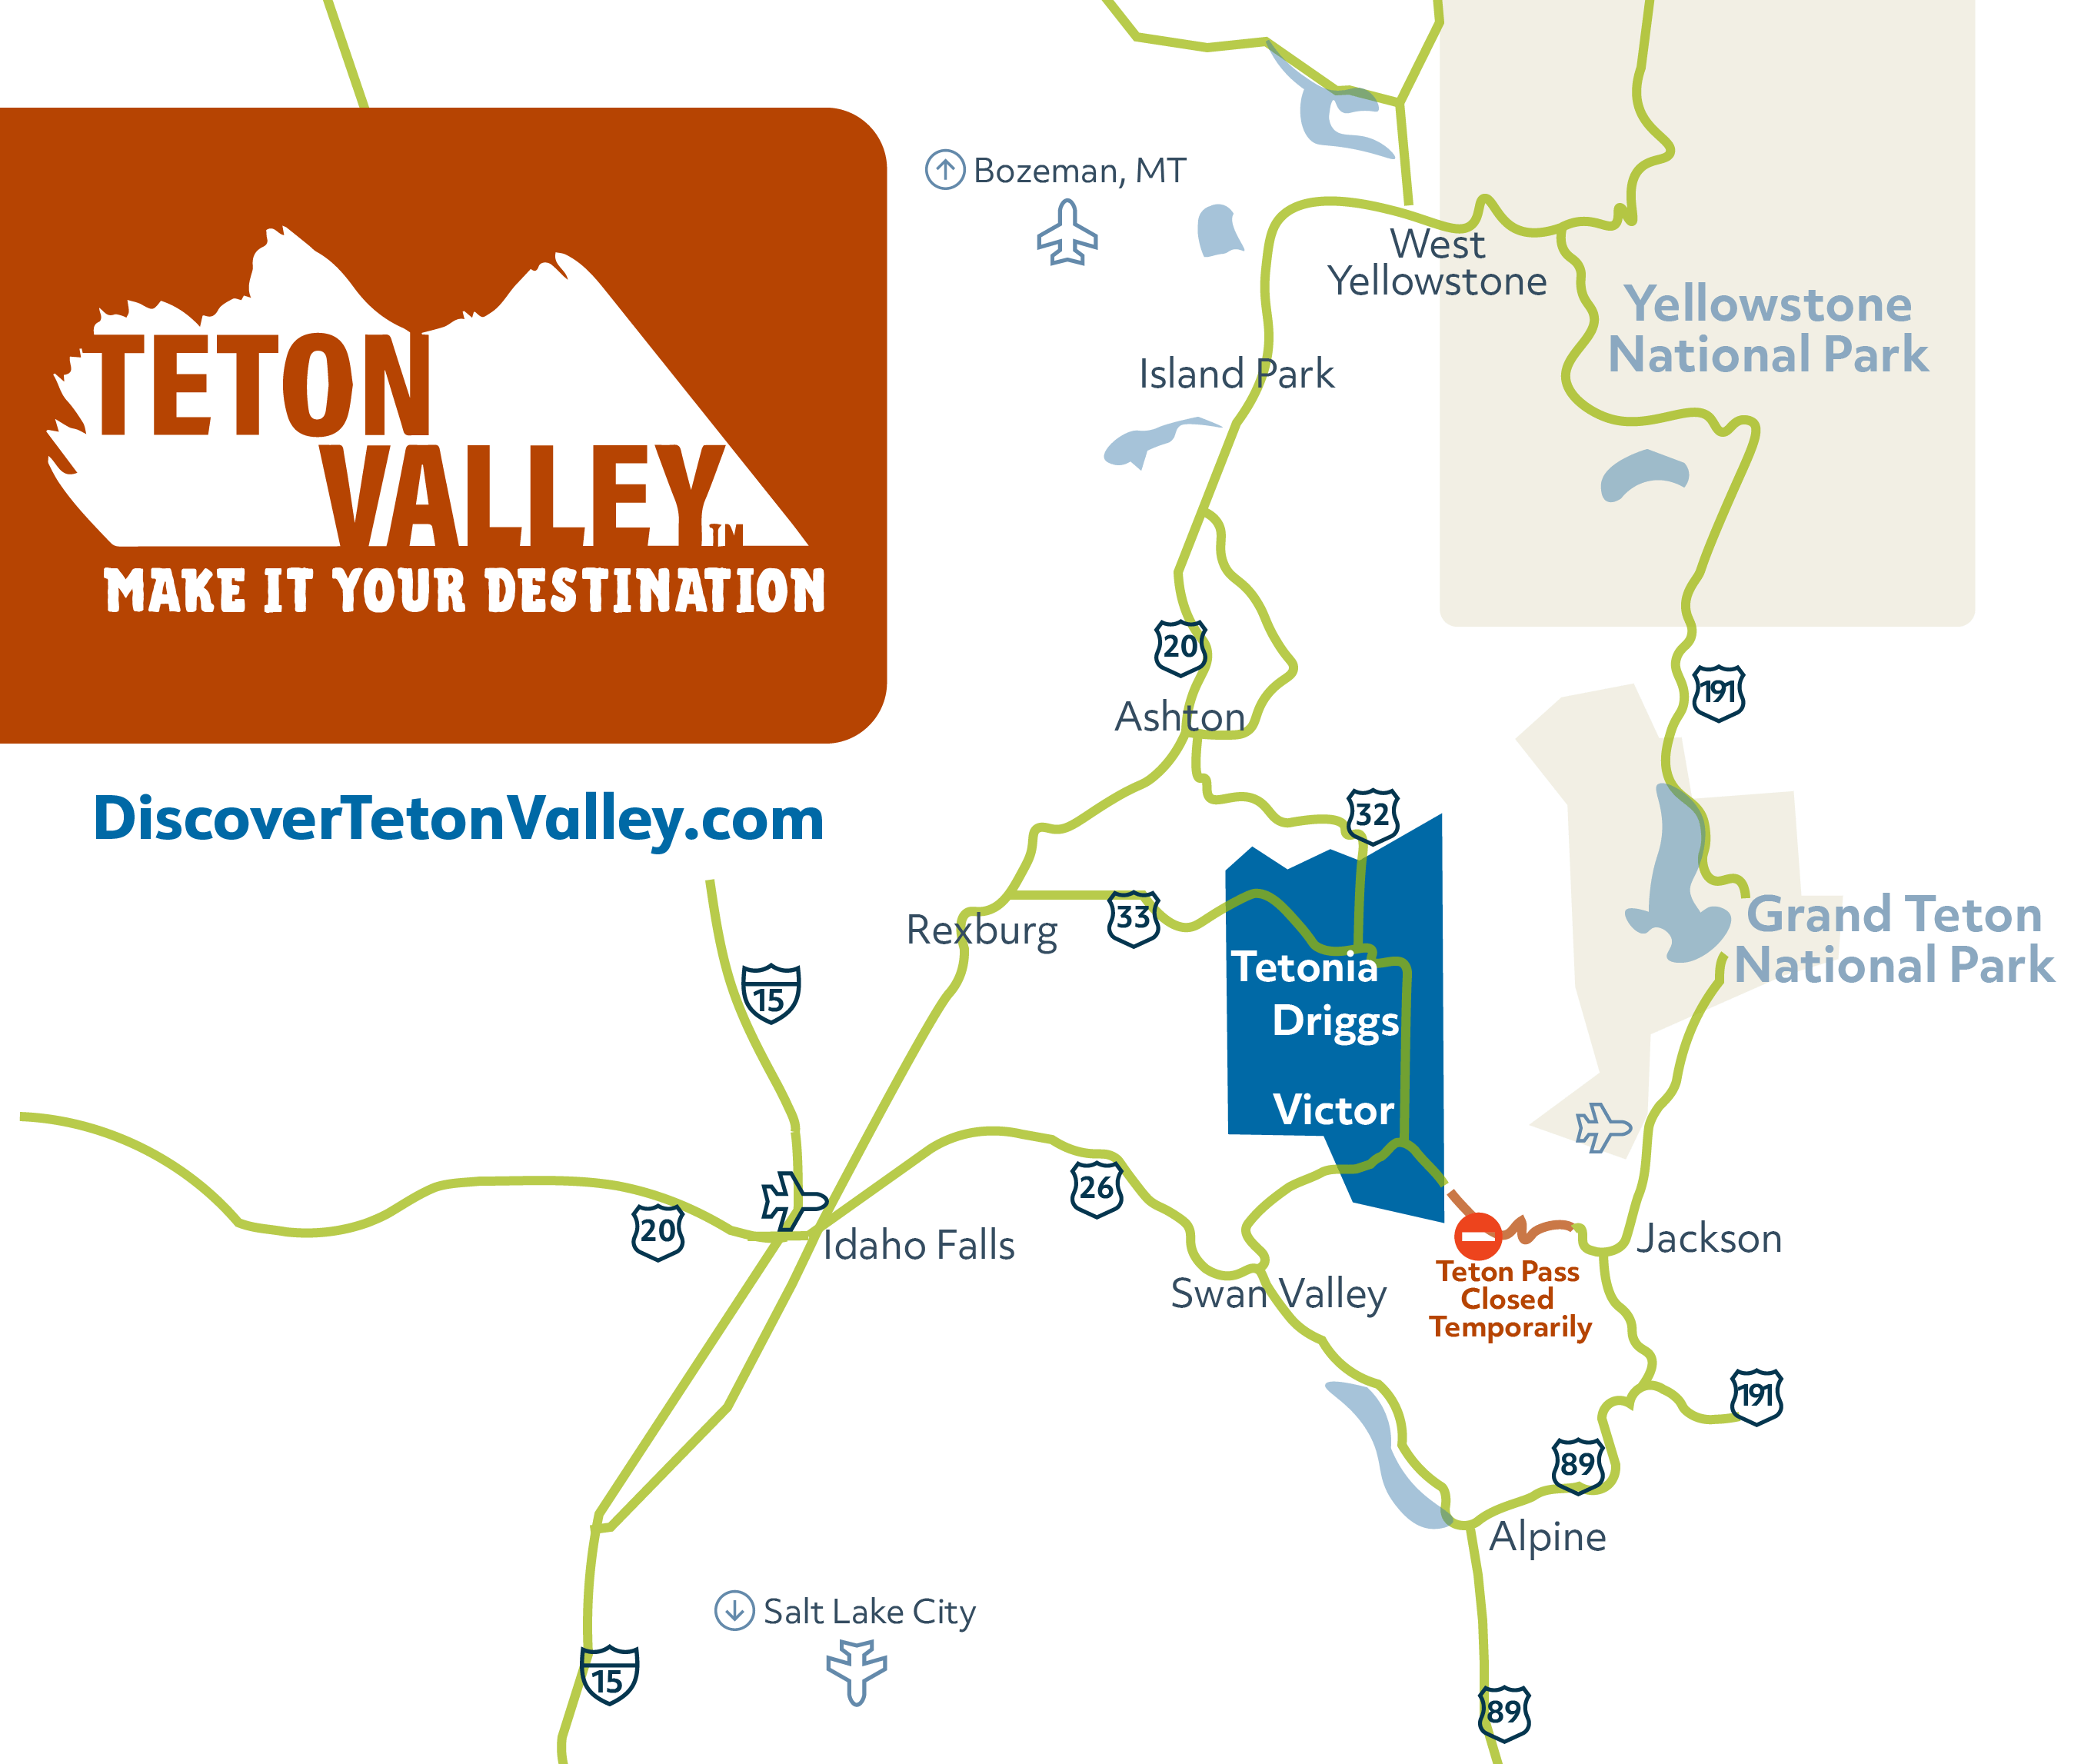 map of Teton Valley Idaho, Teton County Idaho and surrounding Region showing Teton Pass Temporary Closure